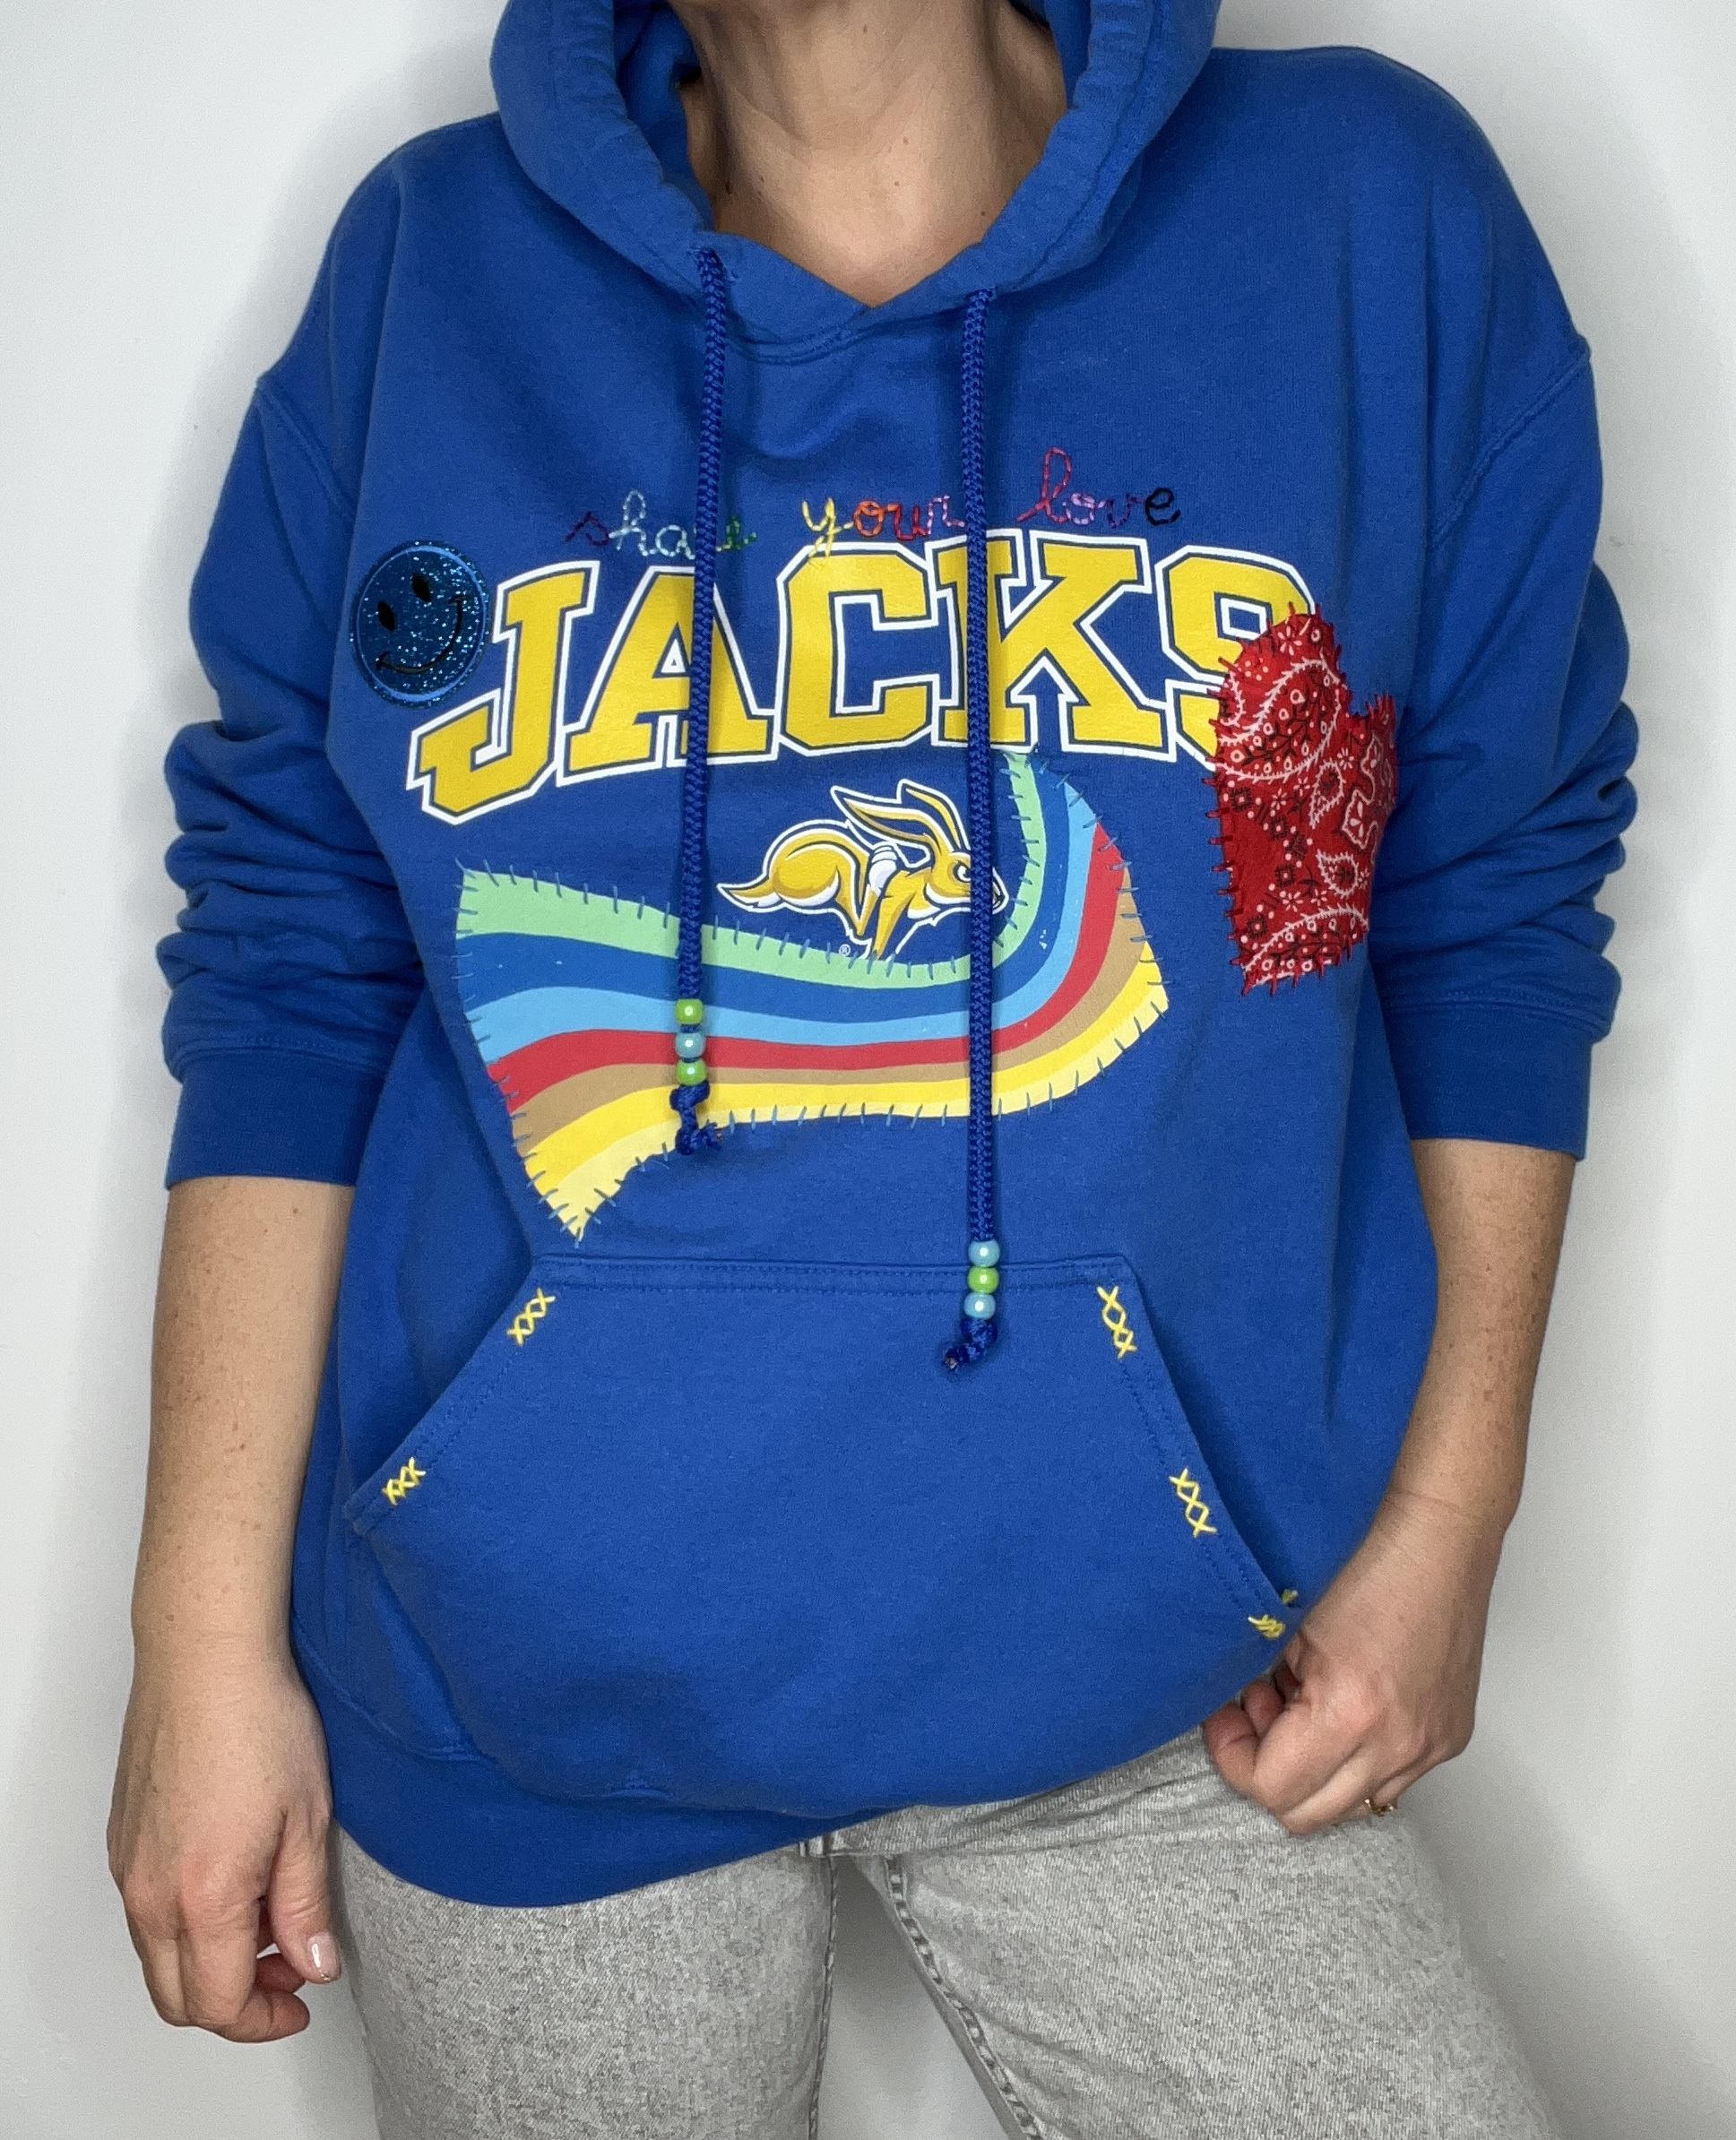 hoodie jacks 3